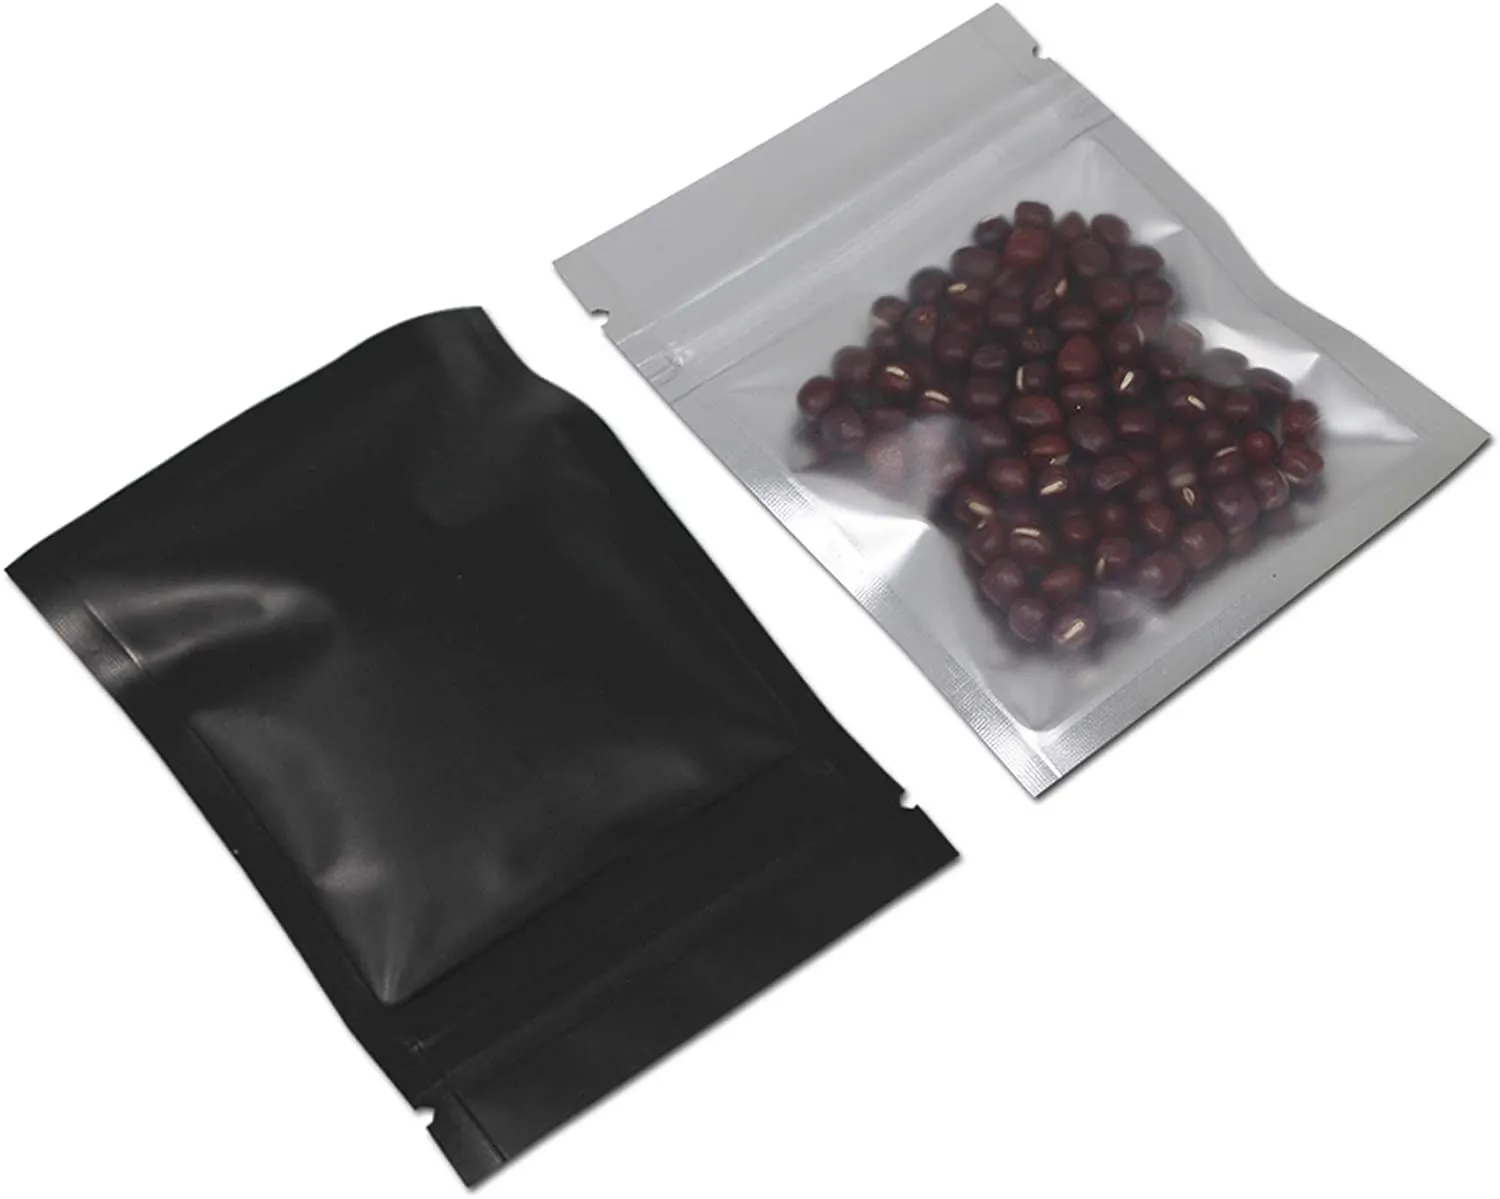 4x6 дюймов запах доказательство фольги сумка задней части черный серебристый металлический алюминиевый пластиковый чехол молнии на молнии уплотнение DH7488